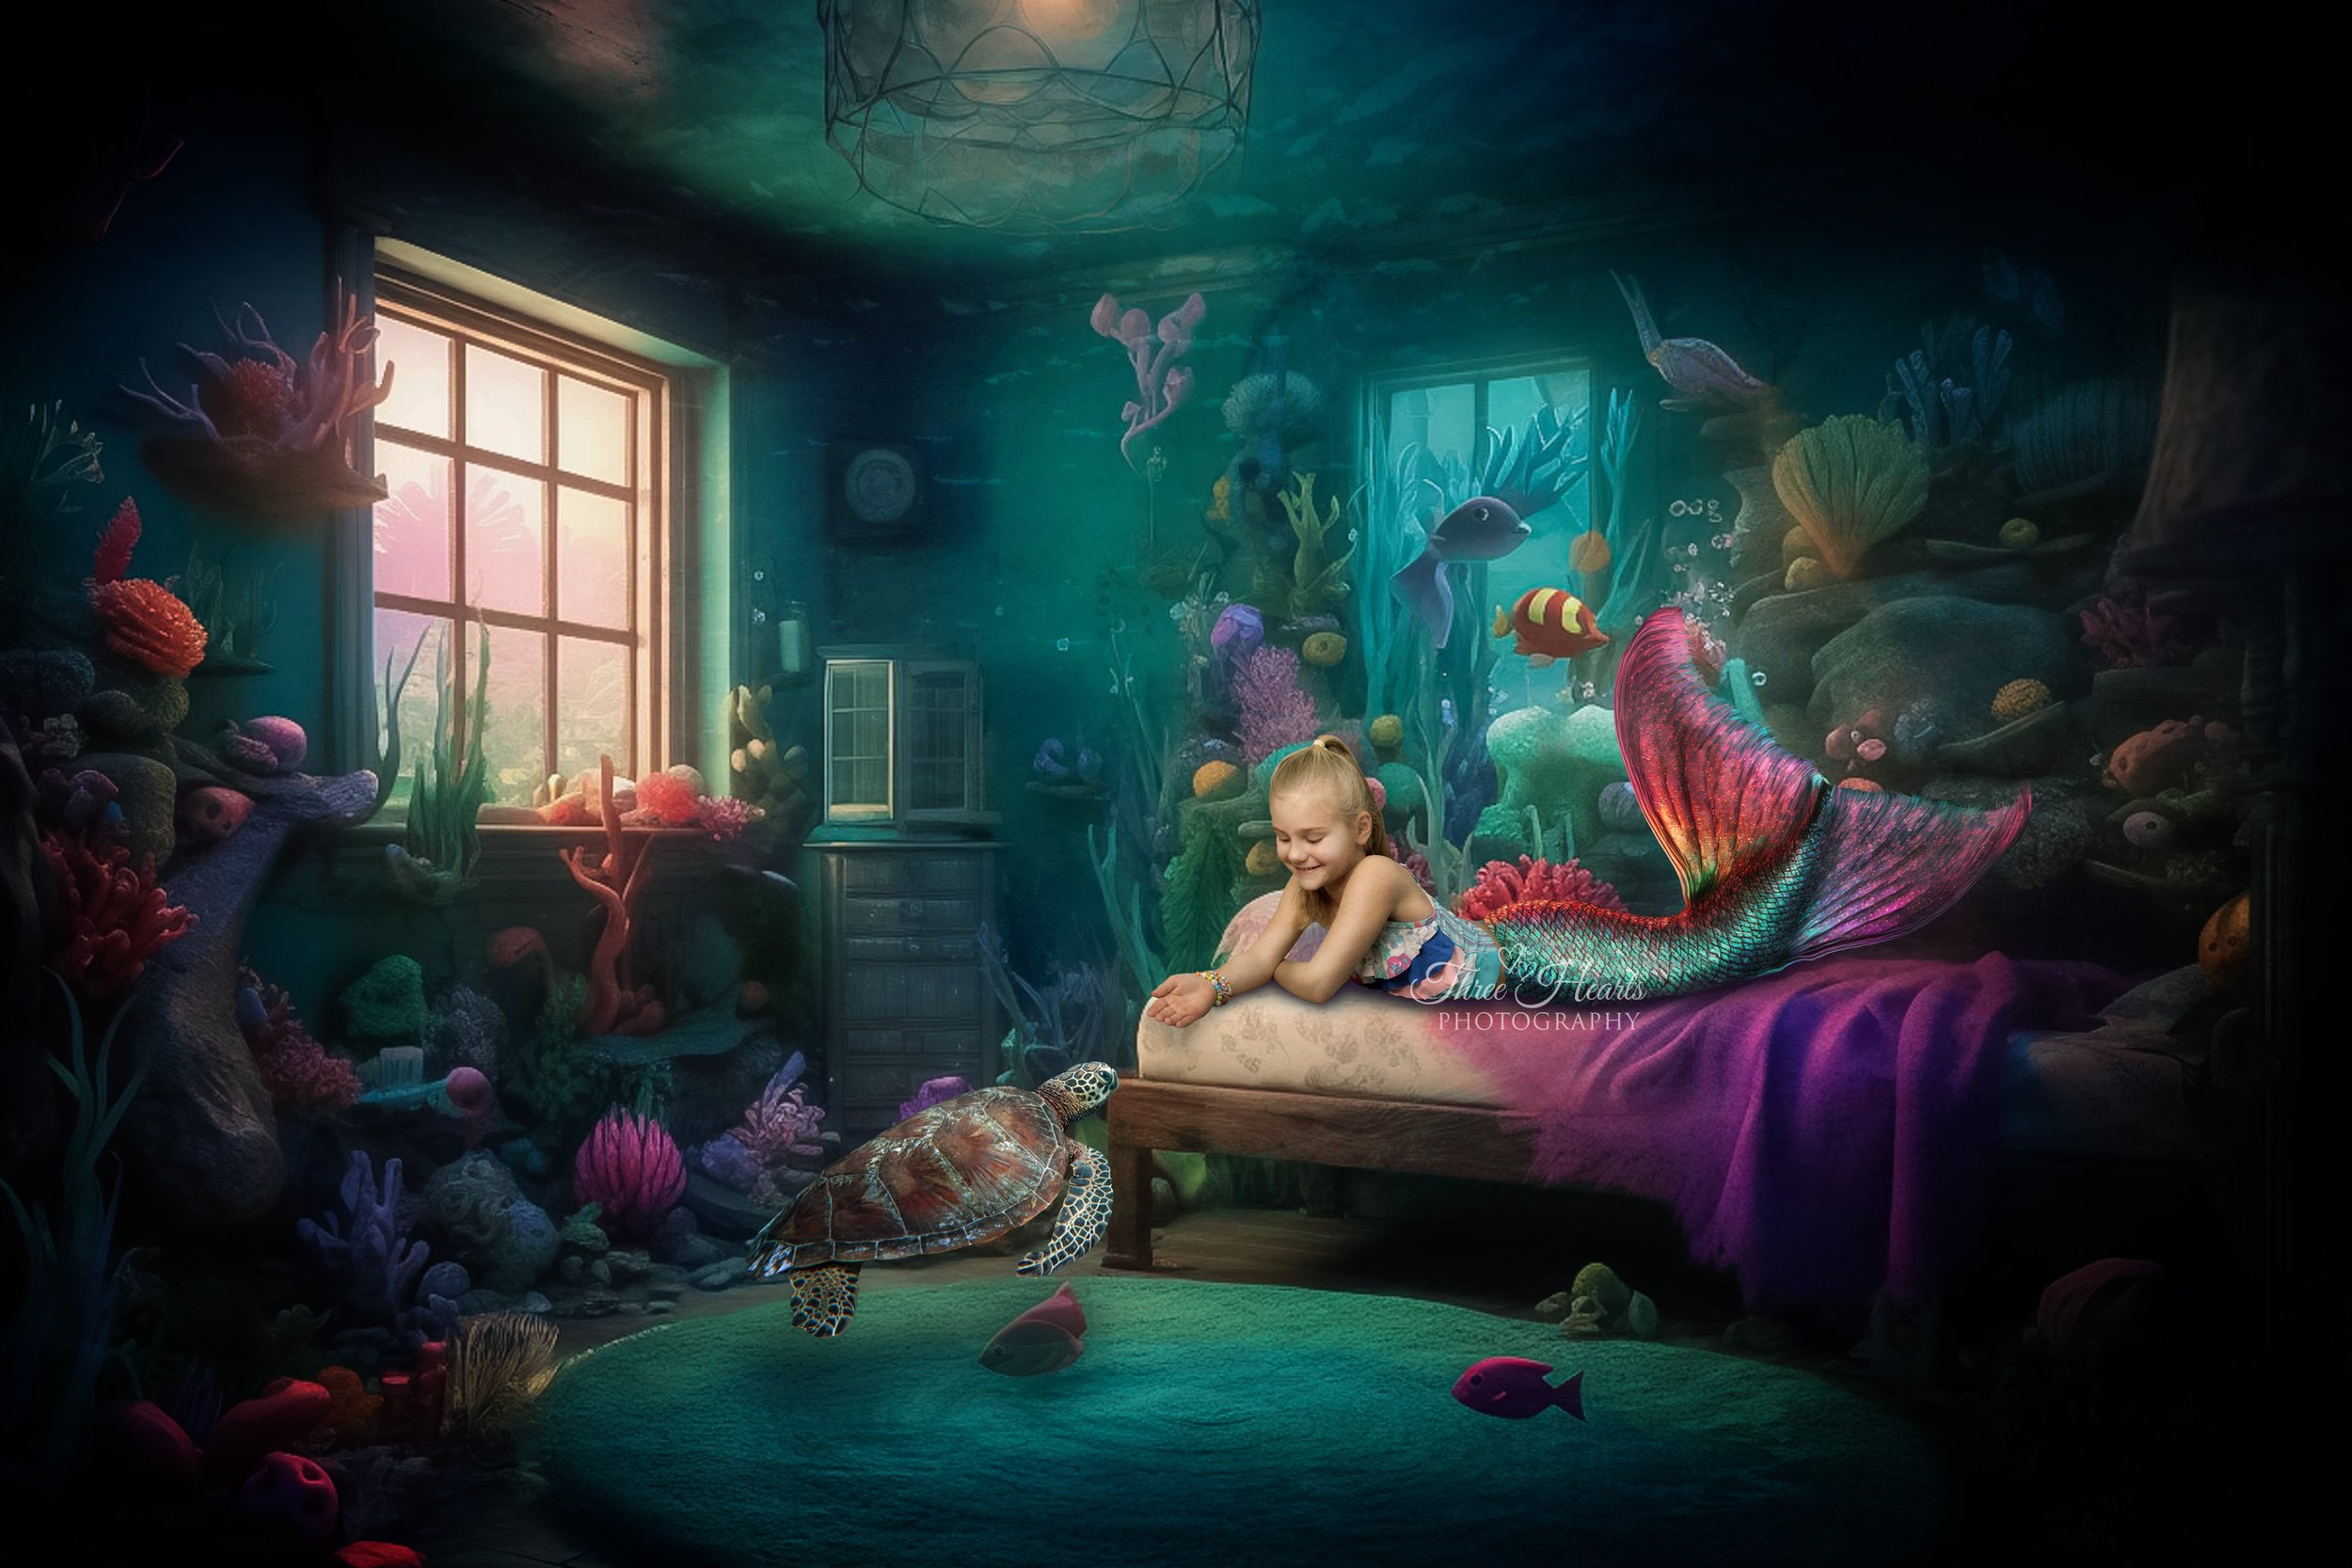 Under the ocean mermaid bedroom 2023 Sienna 22-23 FTMY RW.jpg